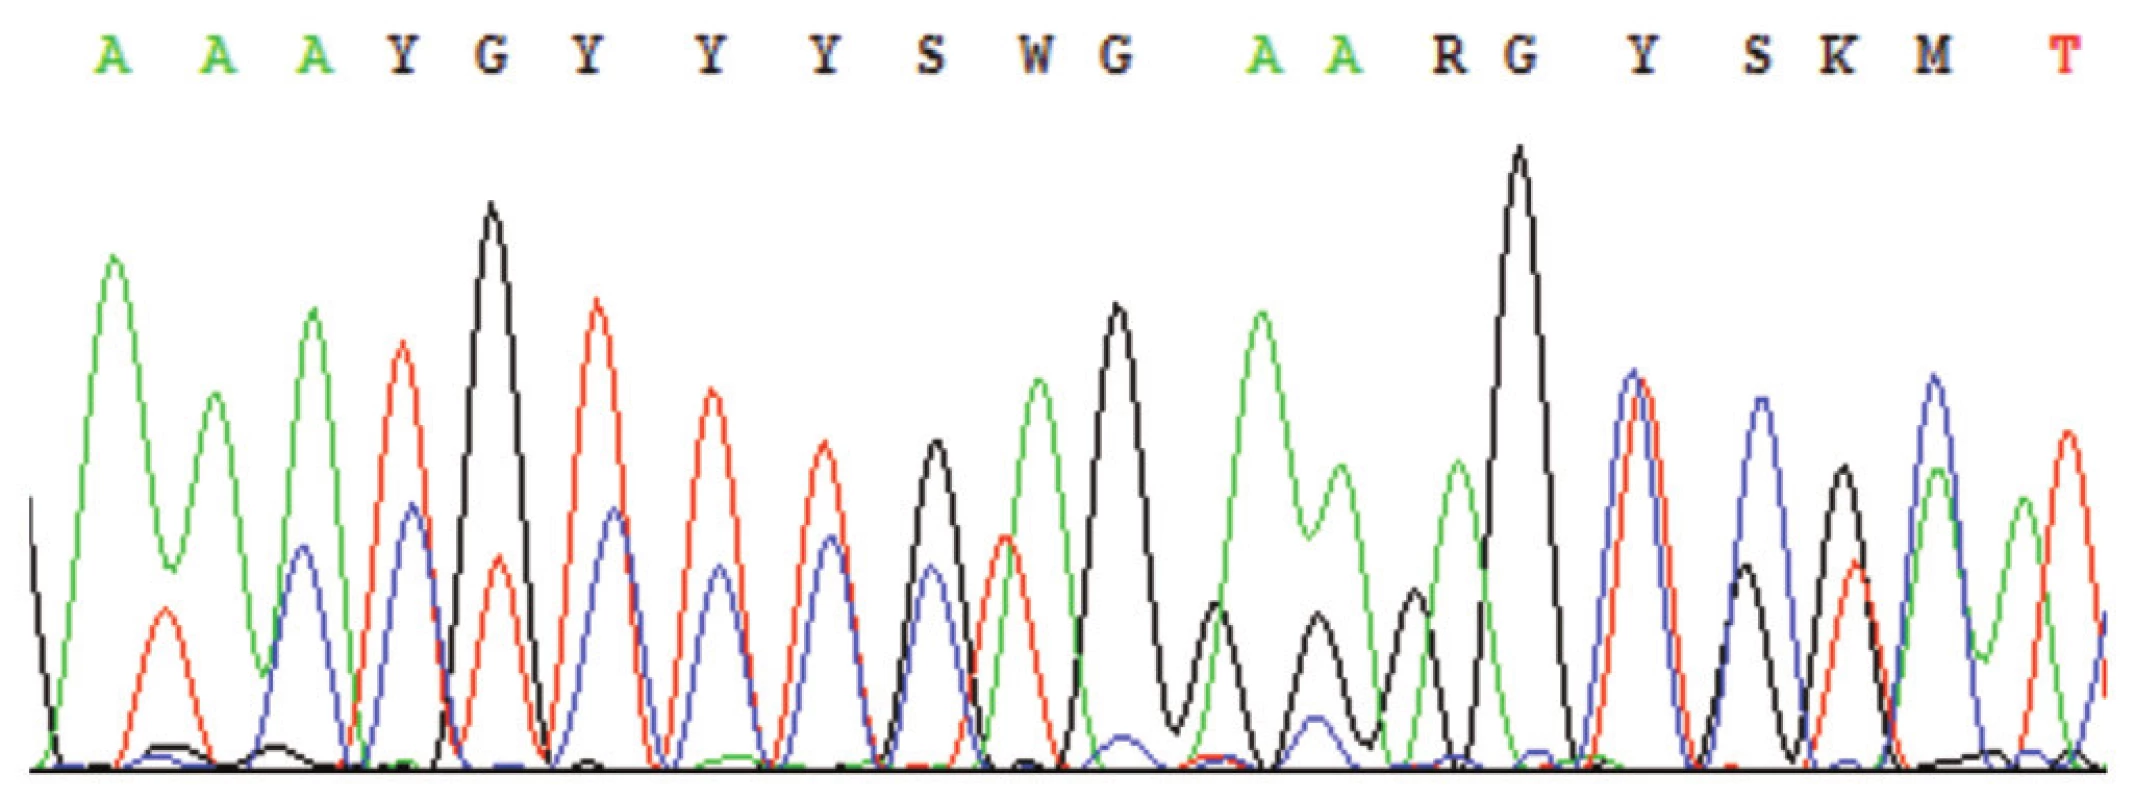 Sekvenogram – příklad výskytu nespecifických píků; nejčastěji z důvodu nedostatečného přečištění PCR od primerů, přítomnosti více produktů v sekvenační reakci, nízké specifičnosti primerů aj. (Označení píků K, M, R, S, W, Y – nomenklatura dle IUPAC-IUB, např. http://www.ncbi.nlm.nih.gov/staff/tao/tools/tool_lettercode.html.)